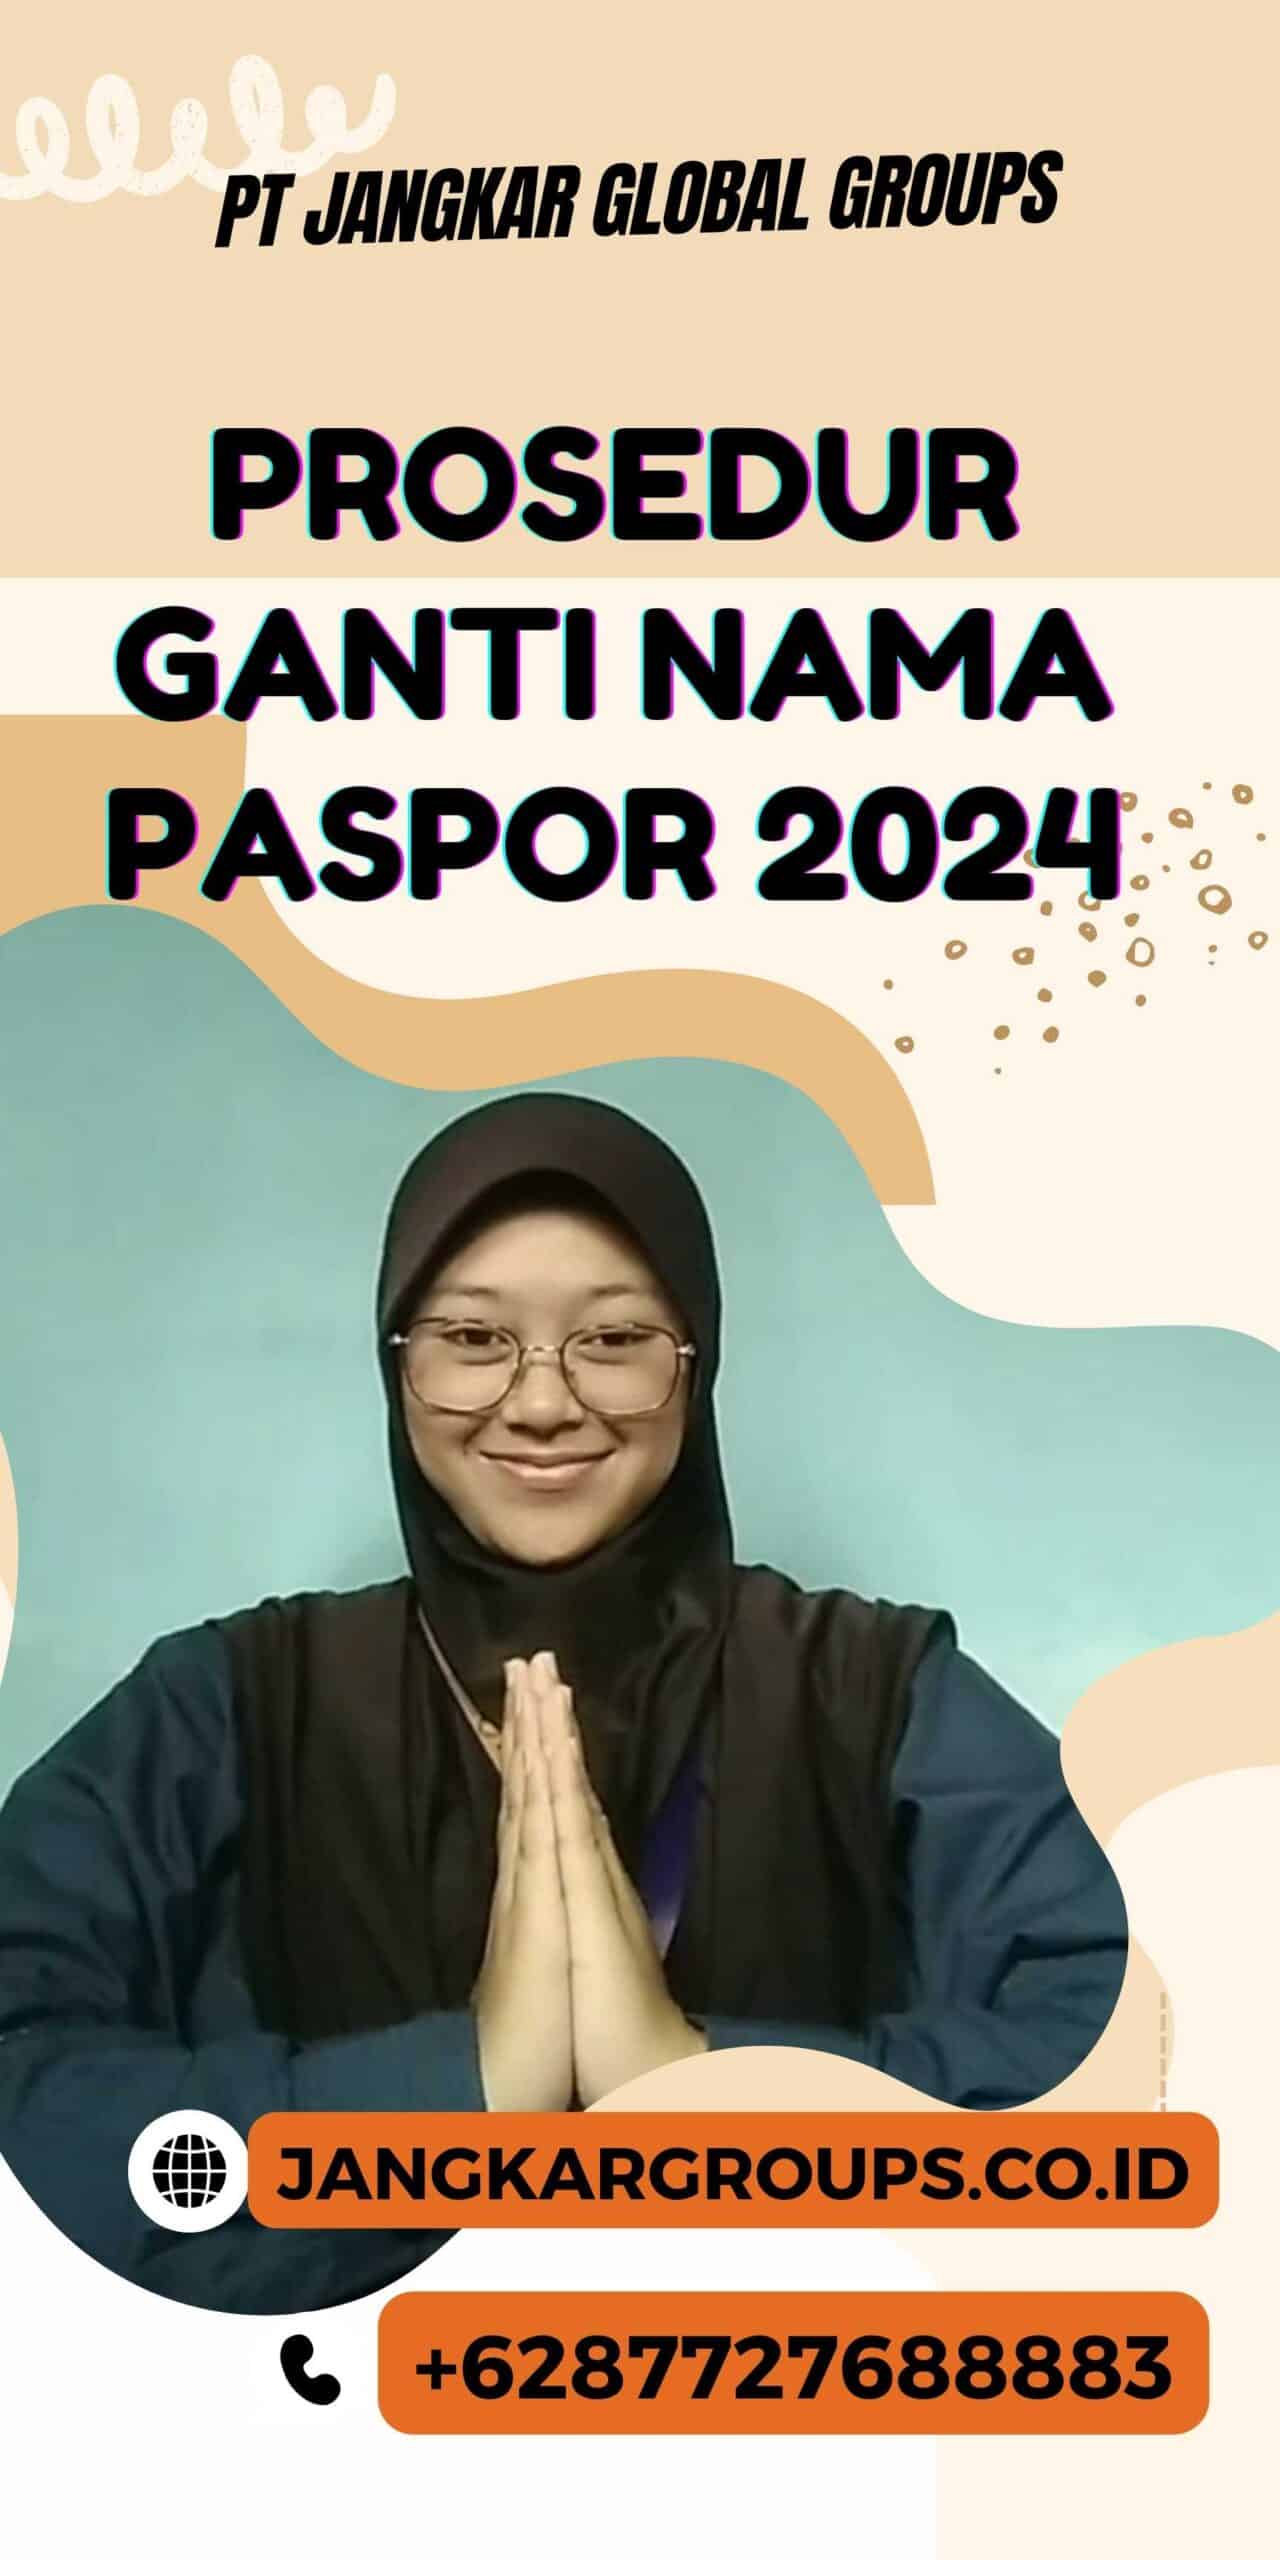 Prosedur Ganti Nama Paspor 2024